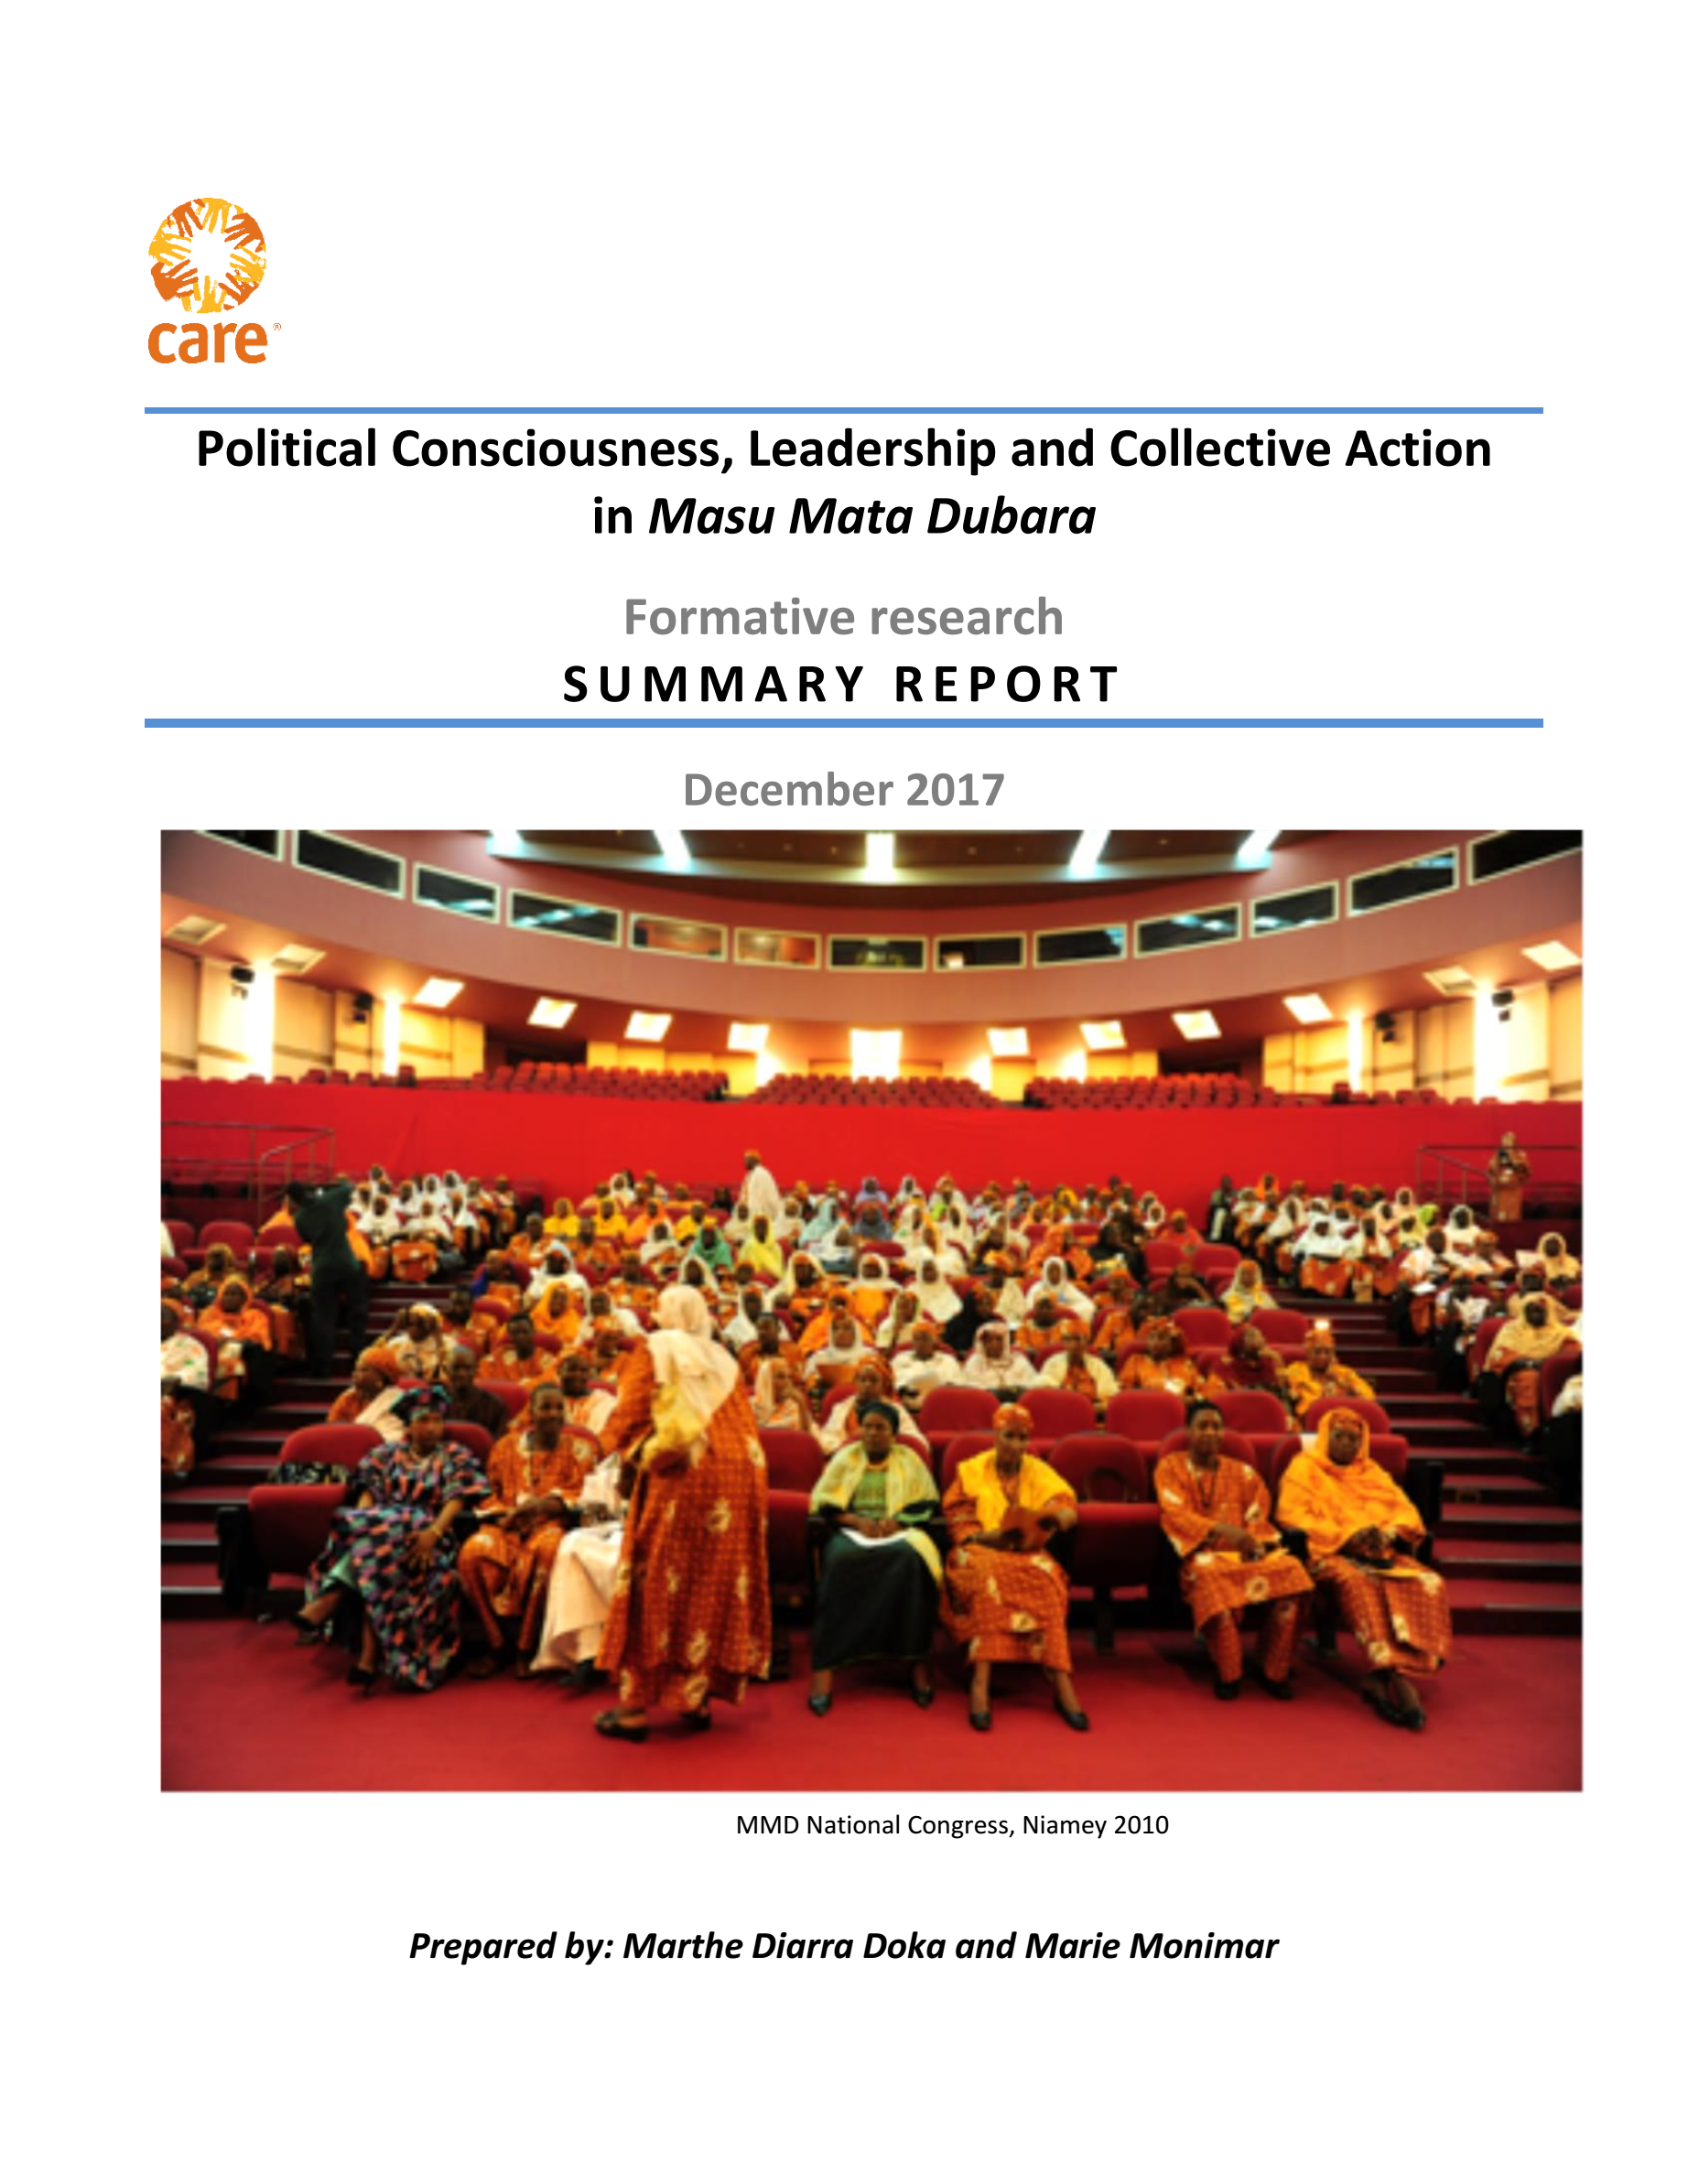 Political Consciousness, Leadership and Collective Action in Masu Mata Dubara